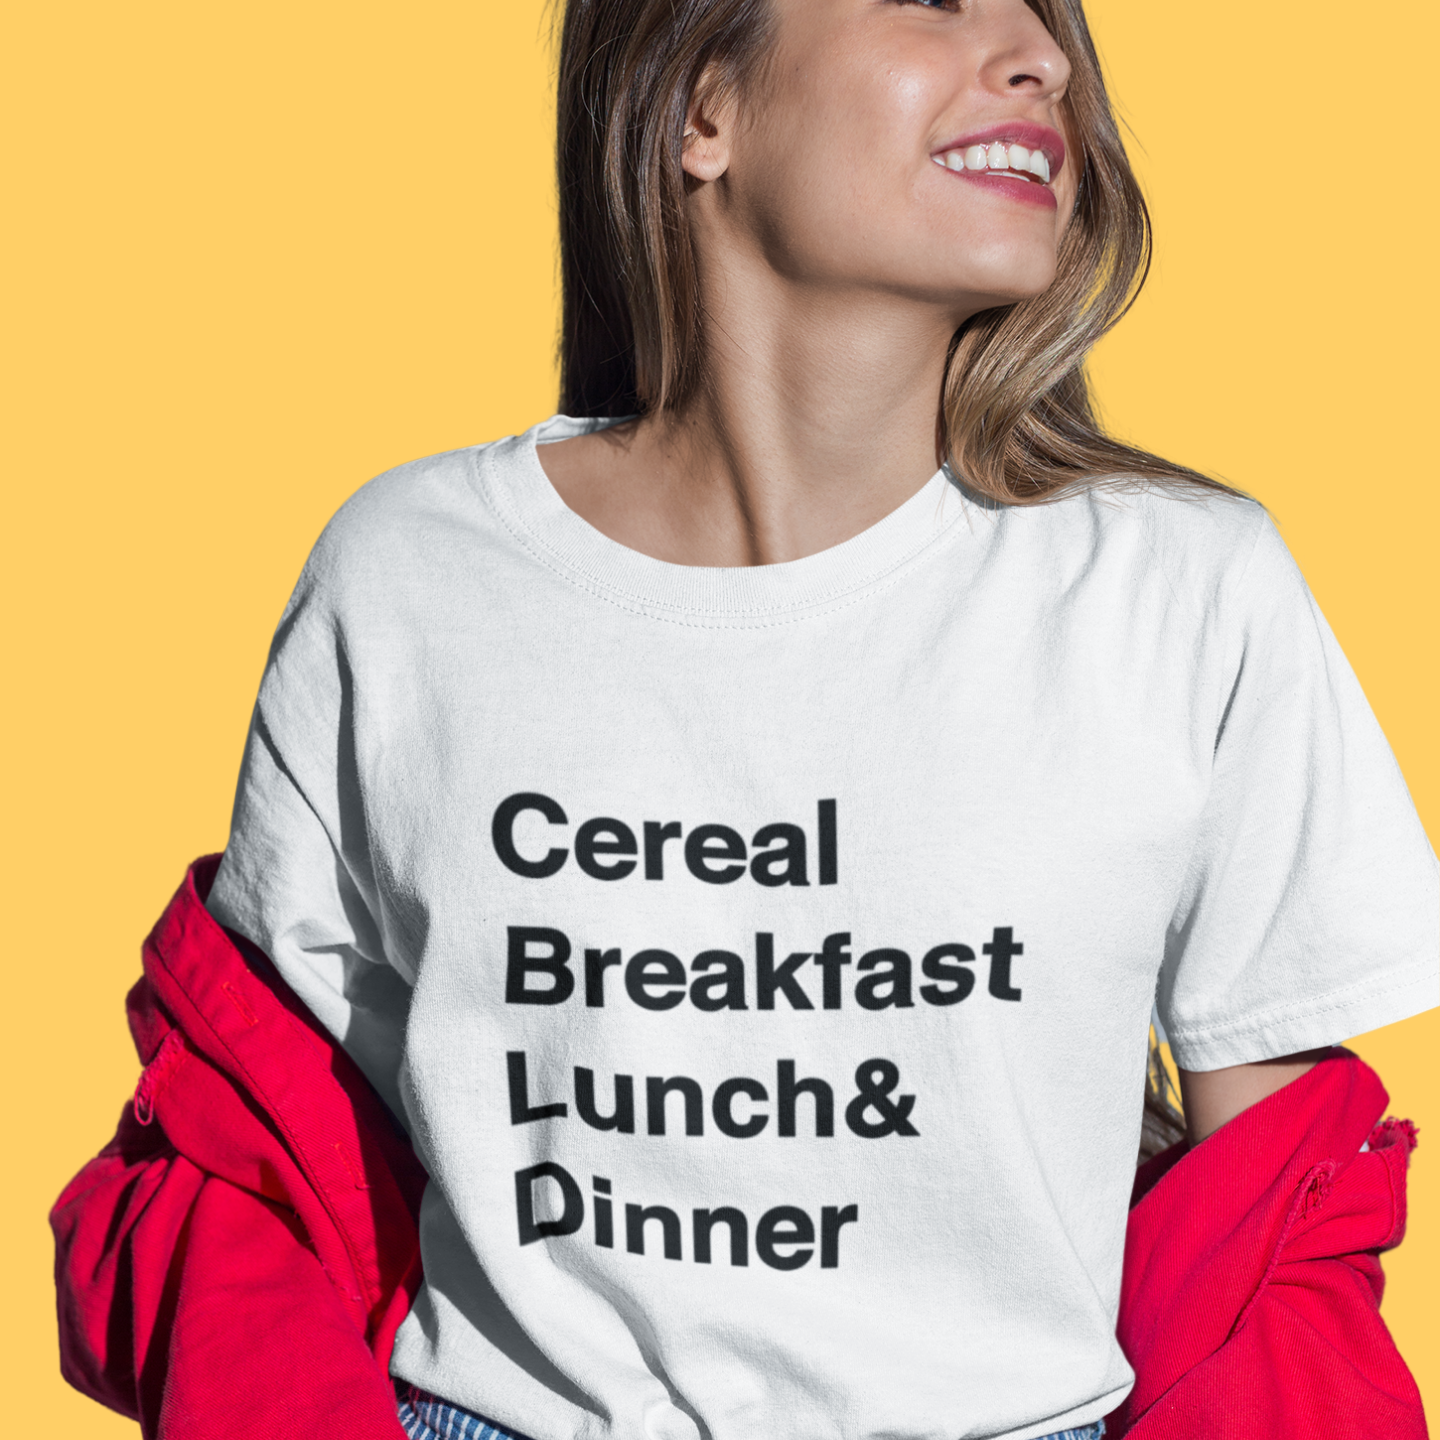 Cereal Breakfast, Lunch, & Dinner T-Shirt (White)